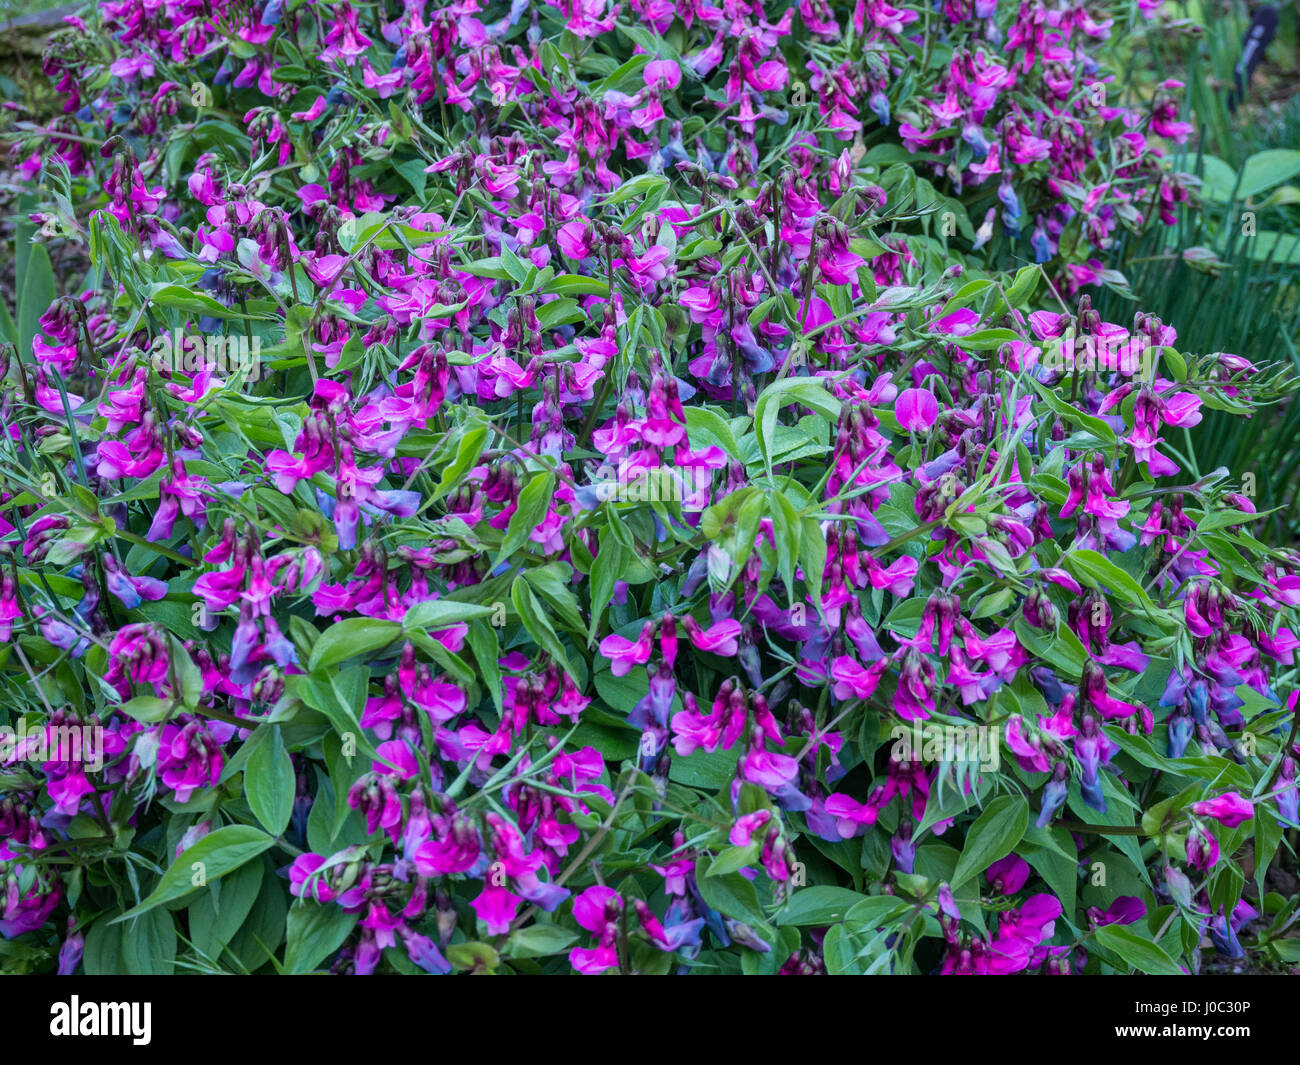 Lathyrus vernus plante en pleine floraison Banque D'Images